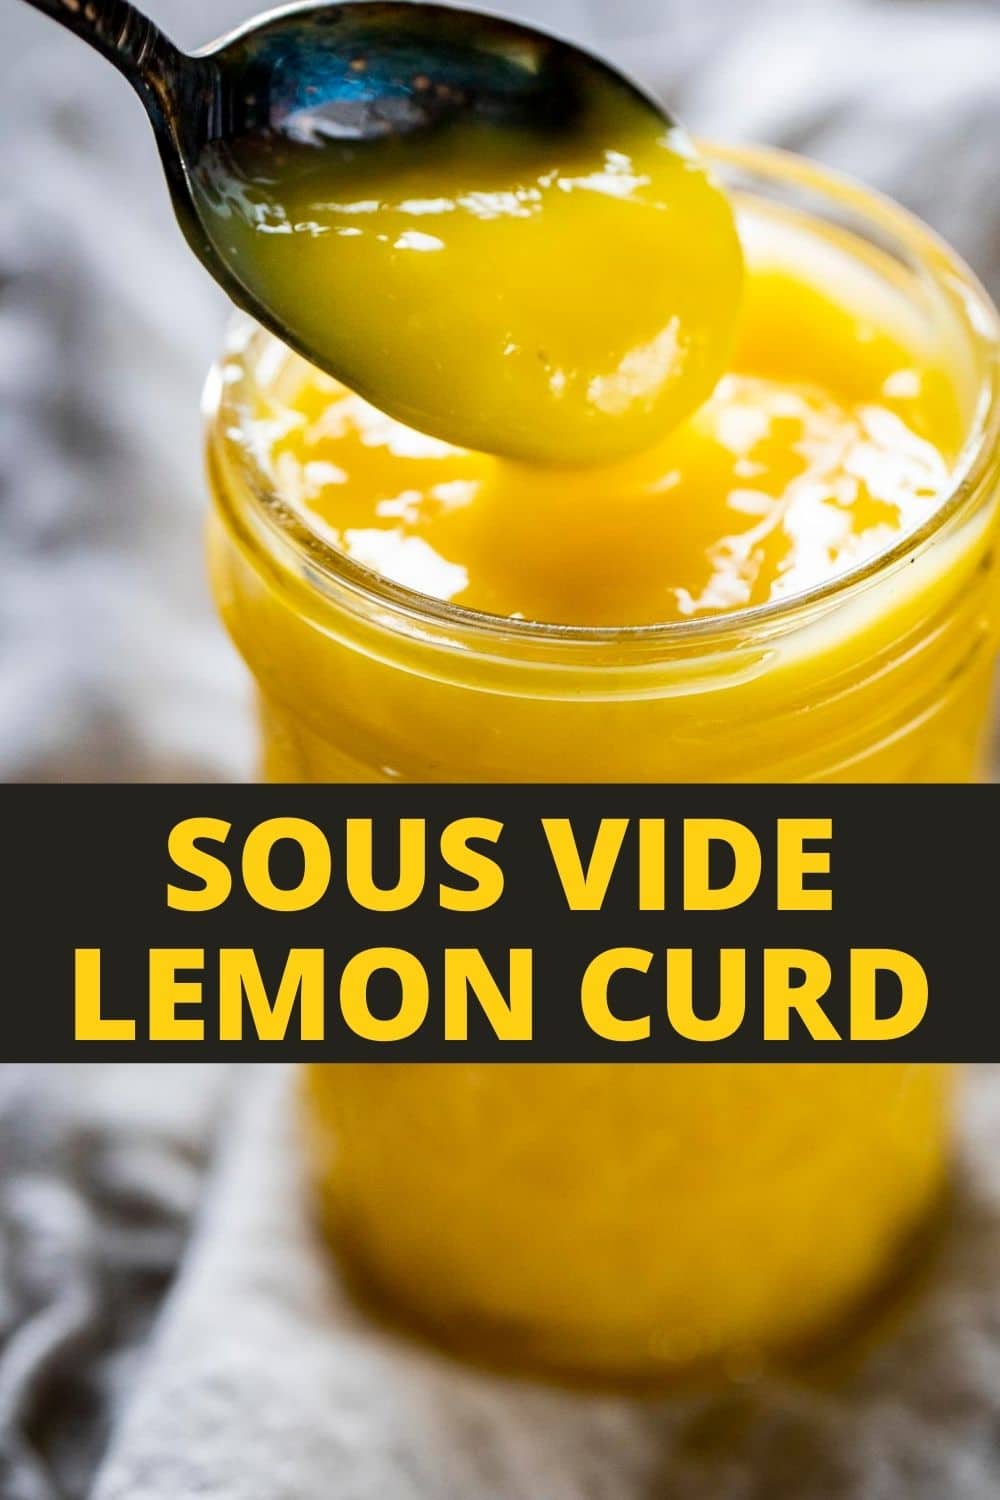 Sous Vide Lemon Curd